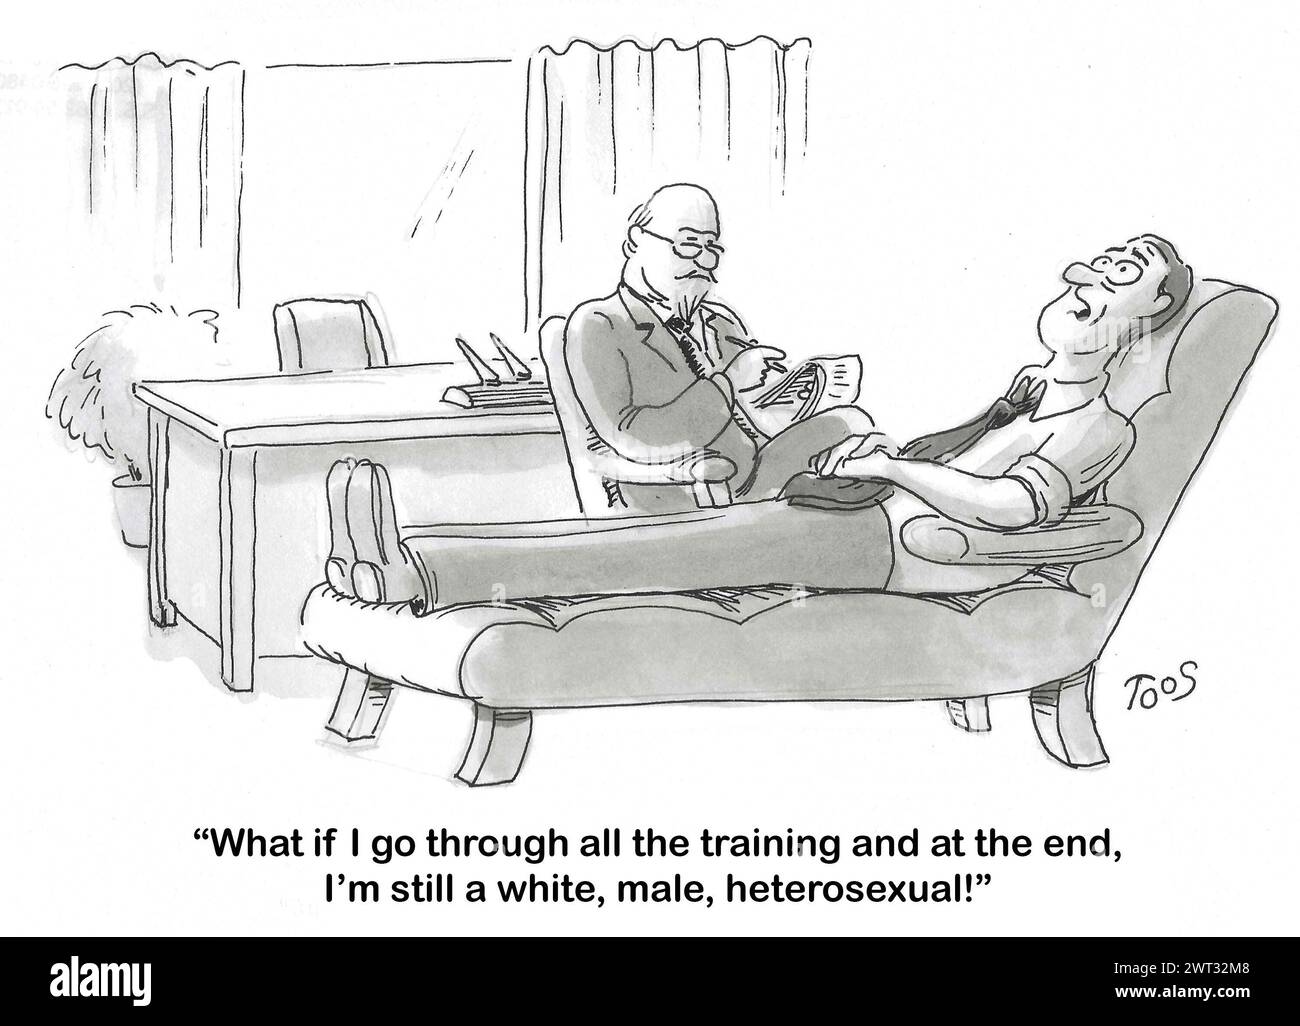 Bande dessinée BW d'un homme parlant à son psychiatre, il s'inquiète d'être blanc, masculin, hétérosexuel. Banque D'Images